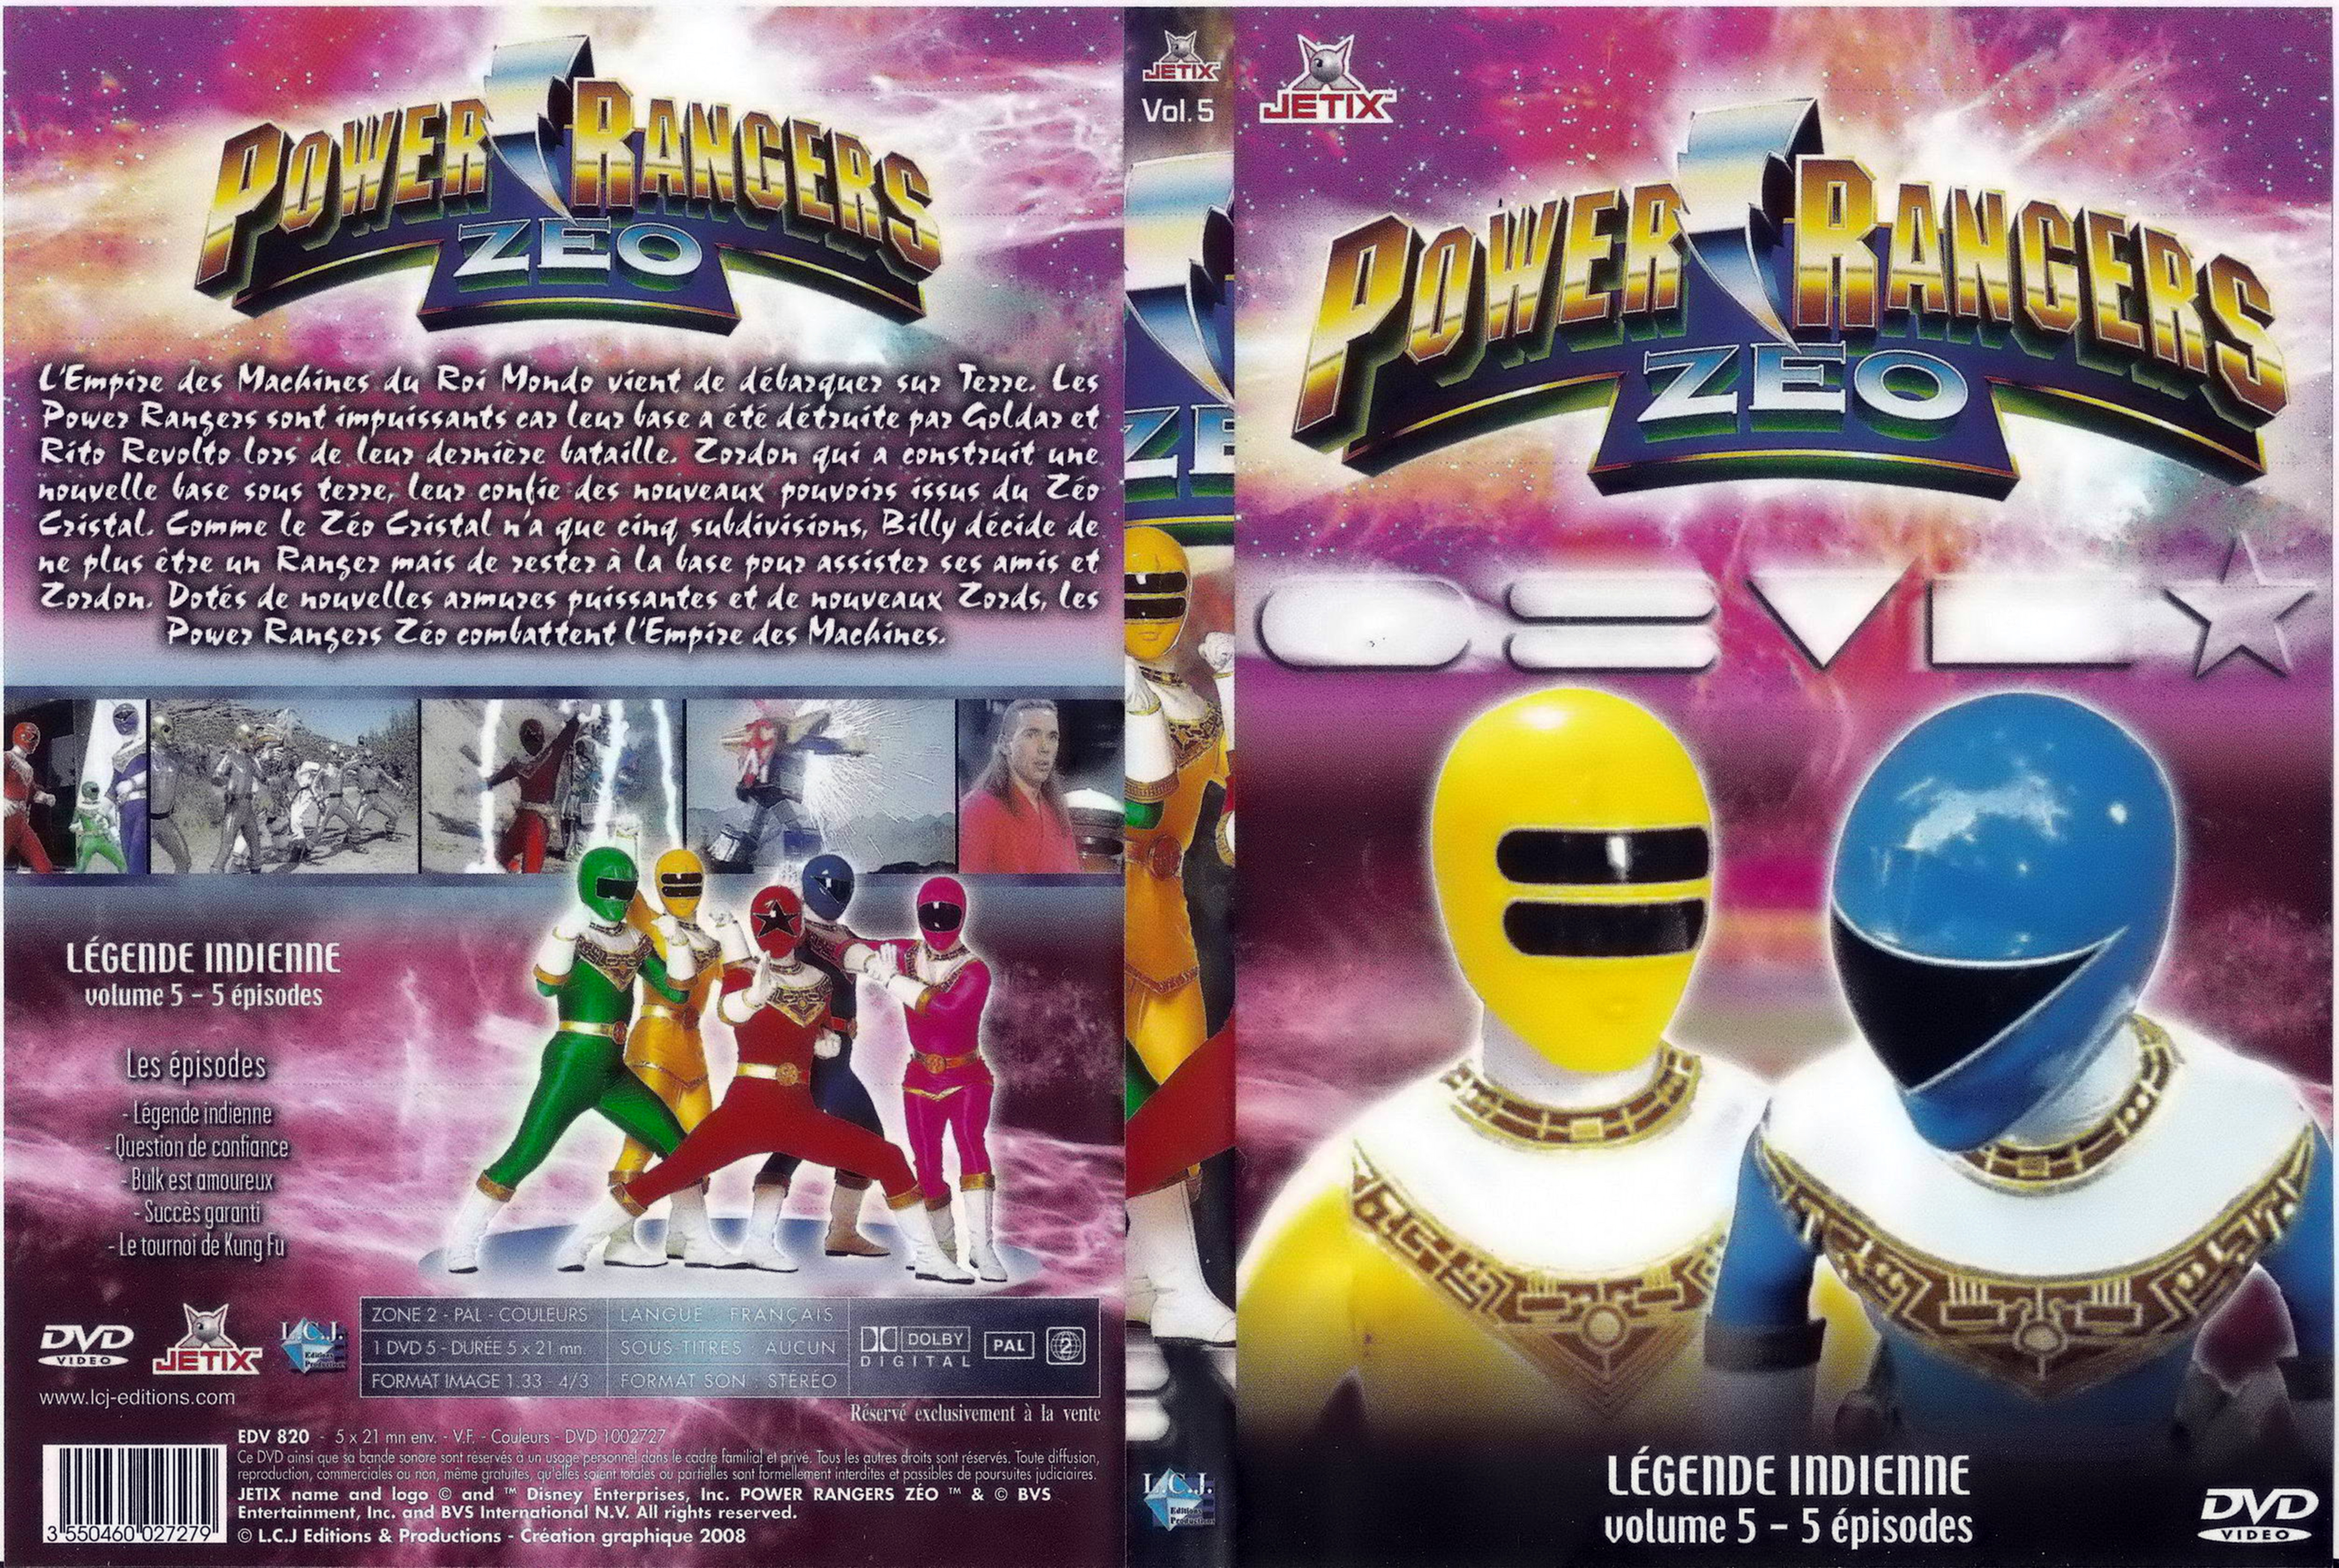 Jaquette DVD Power rangers zeo vol 5